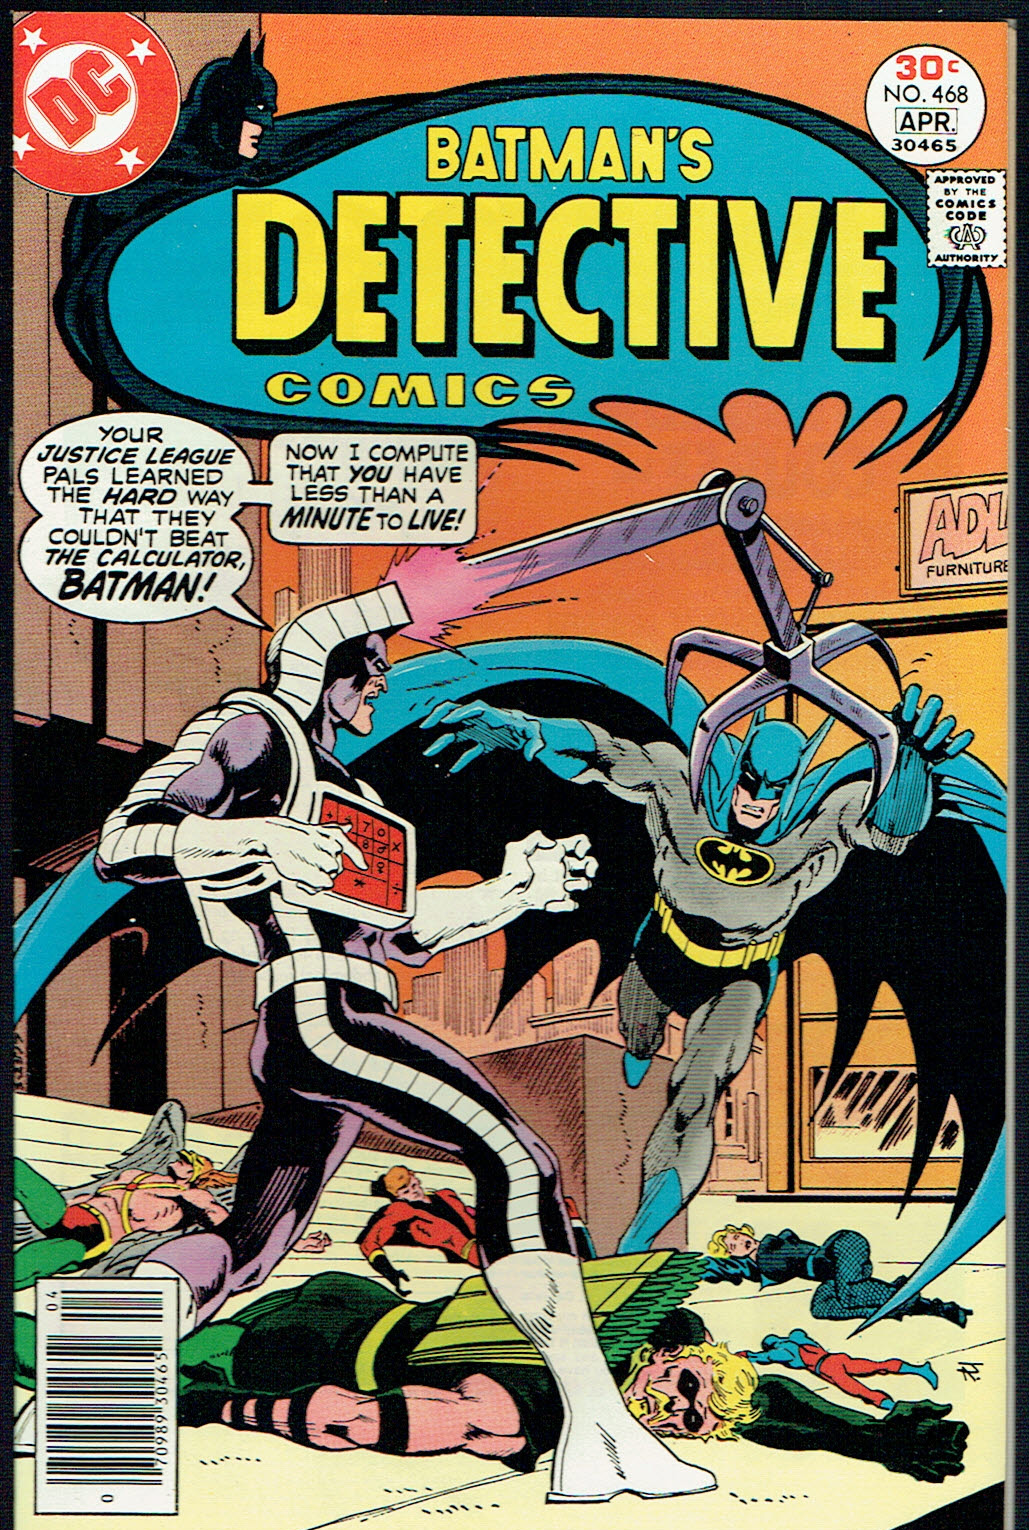 Detective Comics #468